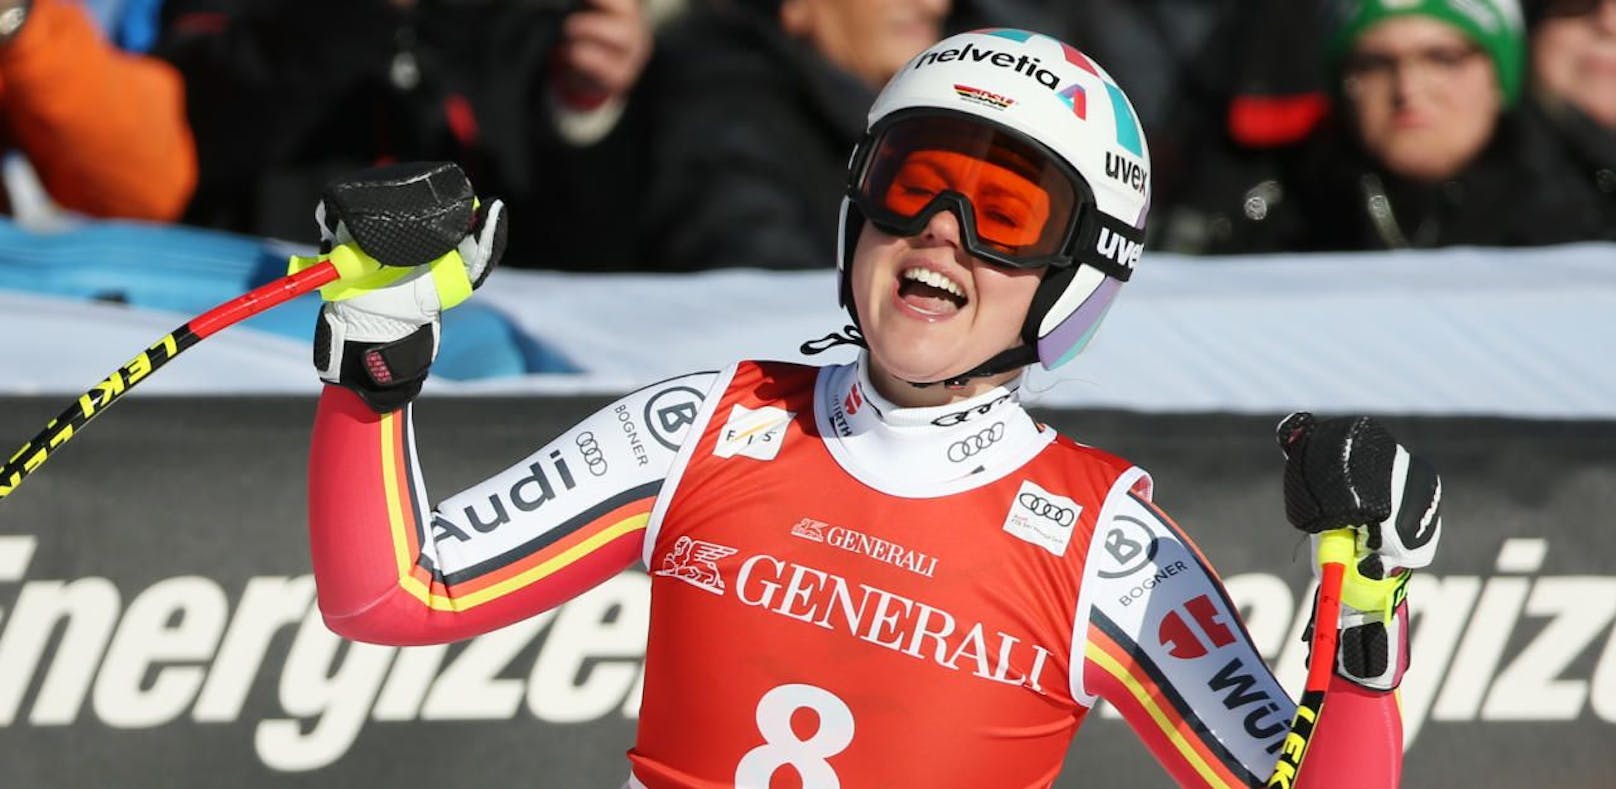 Die Deutsche Viktoria Rebensburg ist überraschend mit 31 Jahren zurückgetreten. Sie zieht sich als Olympiasiegerin und 19-fache Weltcupsiegerin in den Ski-Ruhestand zurück.